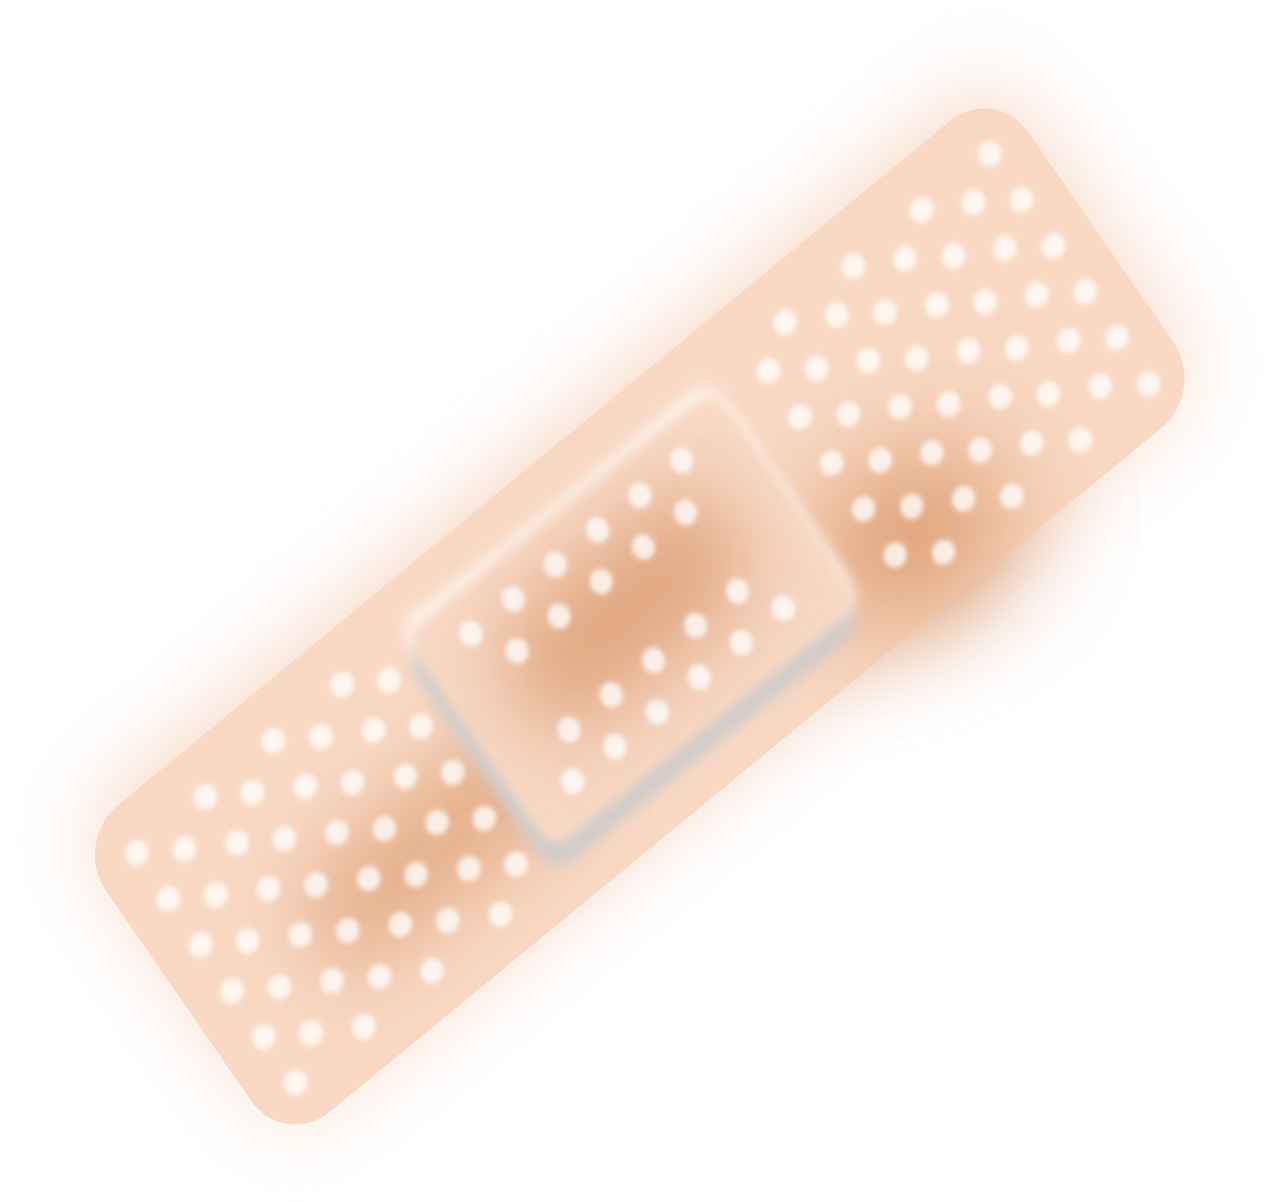 adhesive bandages sticking plaster bandage free photo